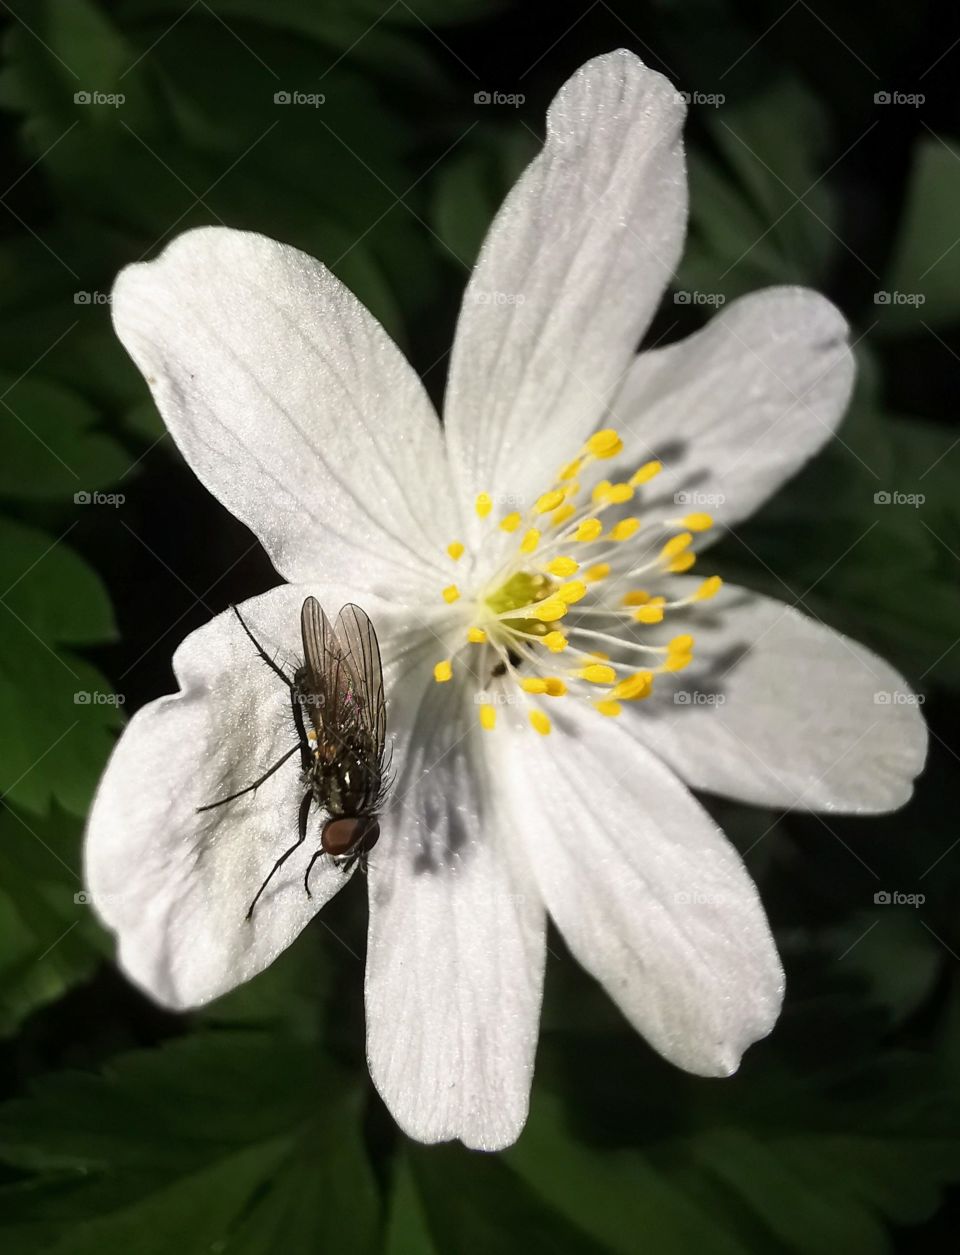 Makro Fotografie. Blume mit einer Fliege